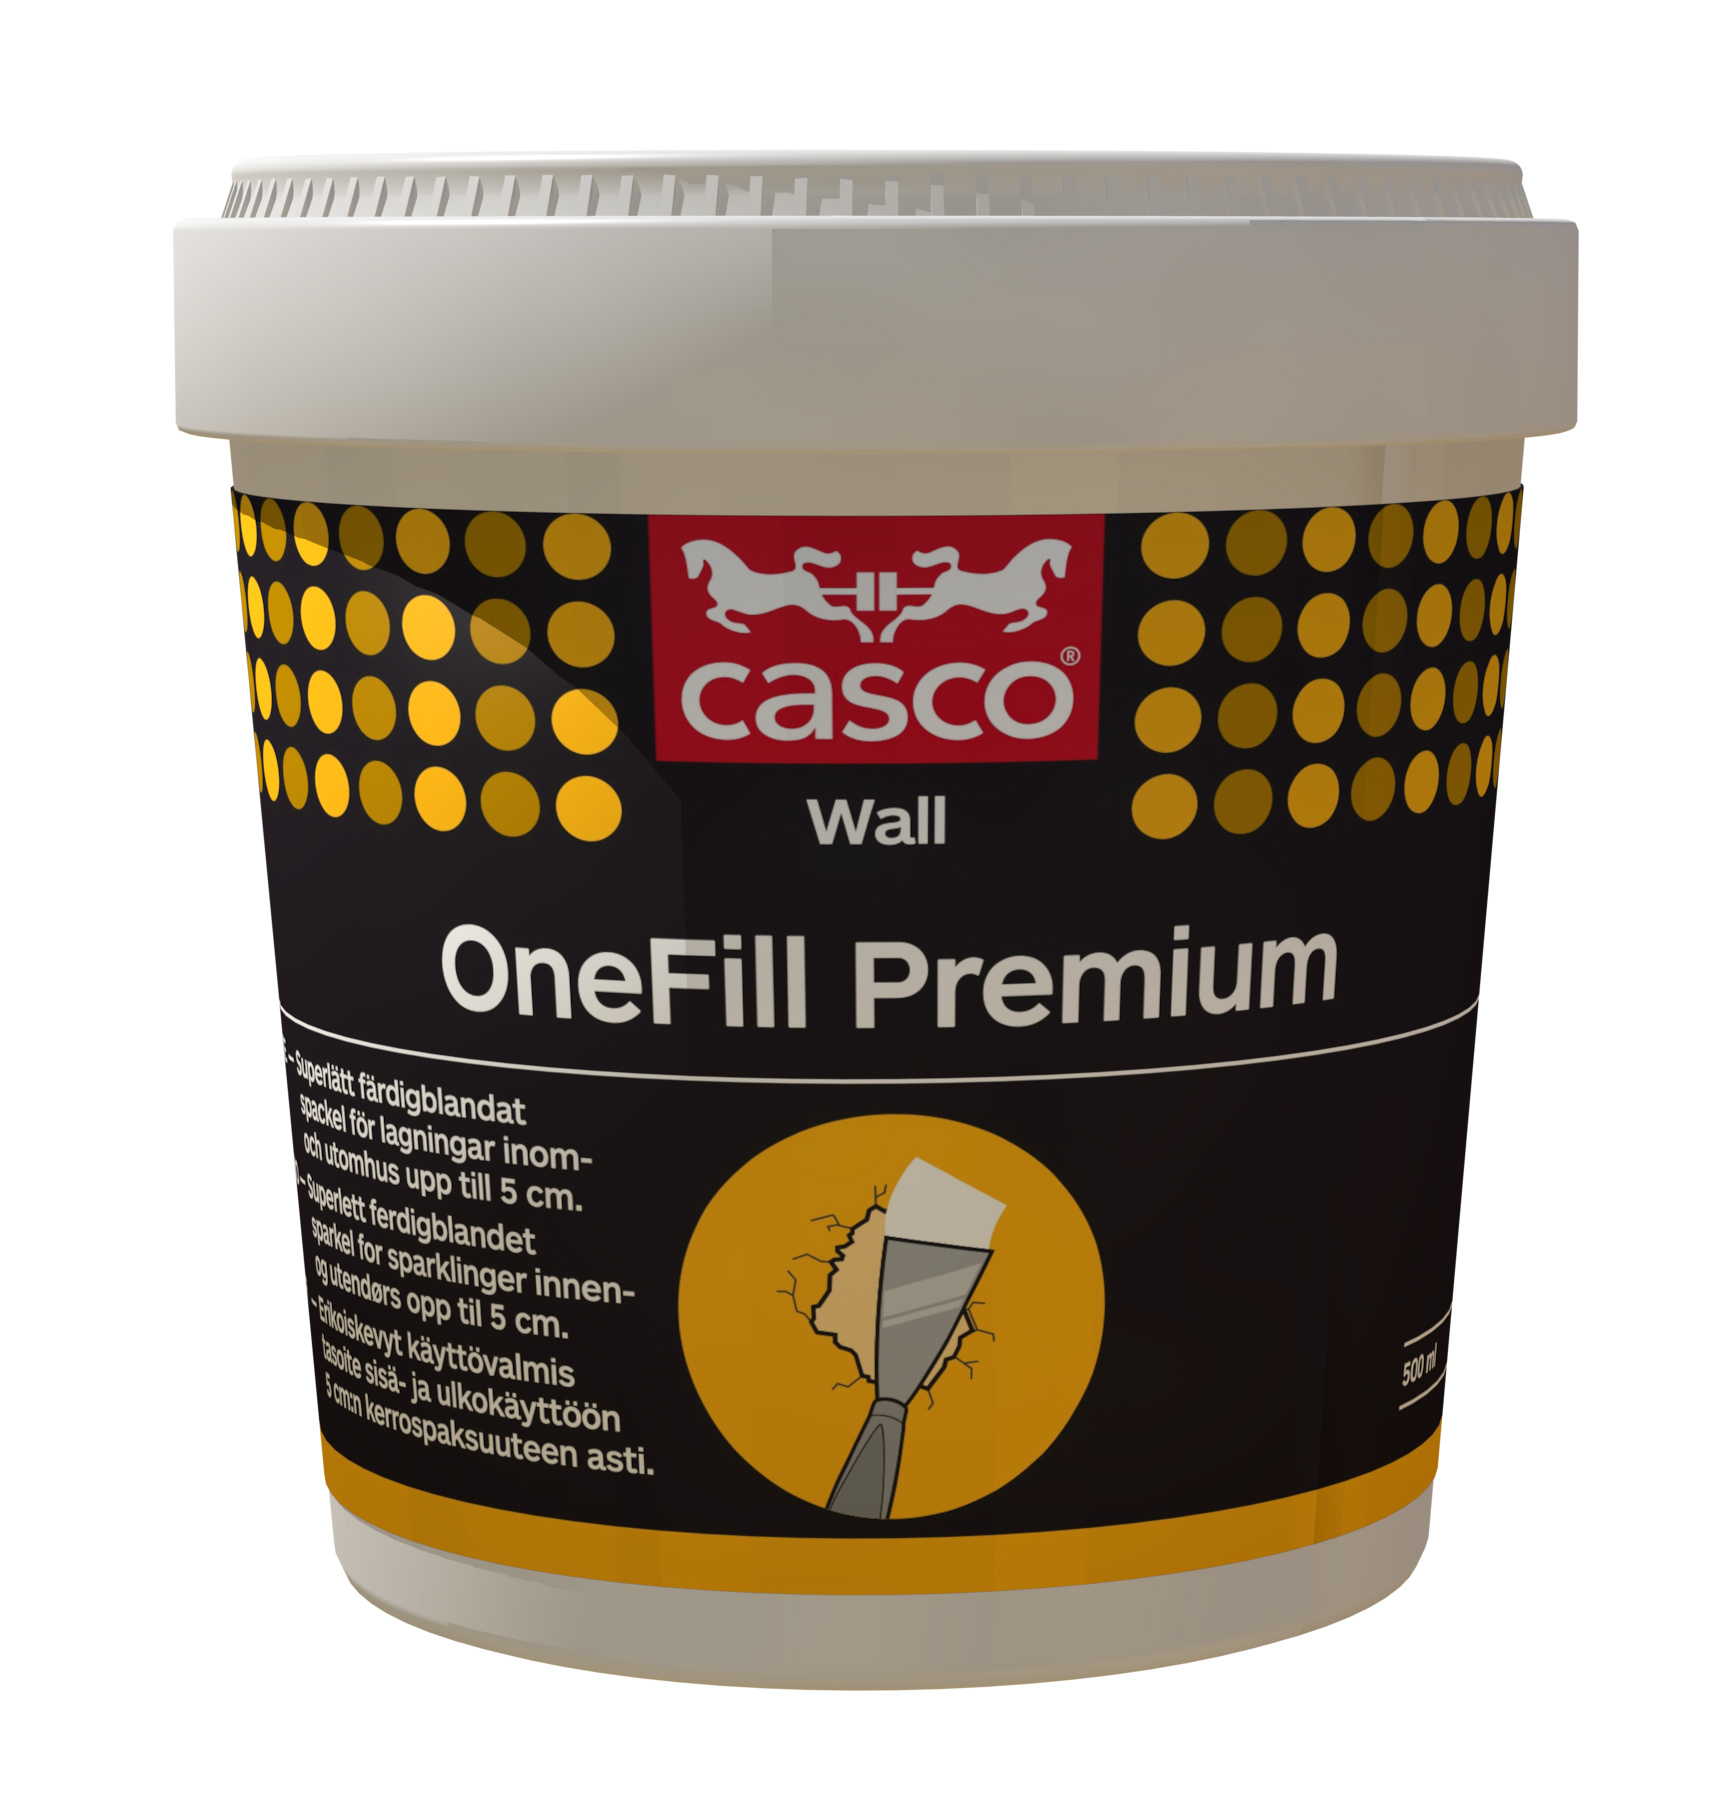 Casco OneFill Premium veggsparkel